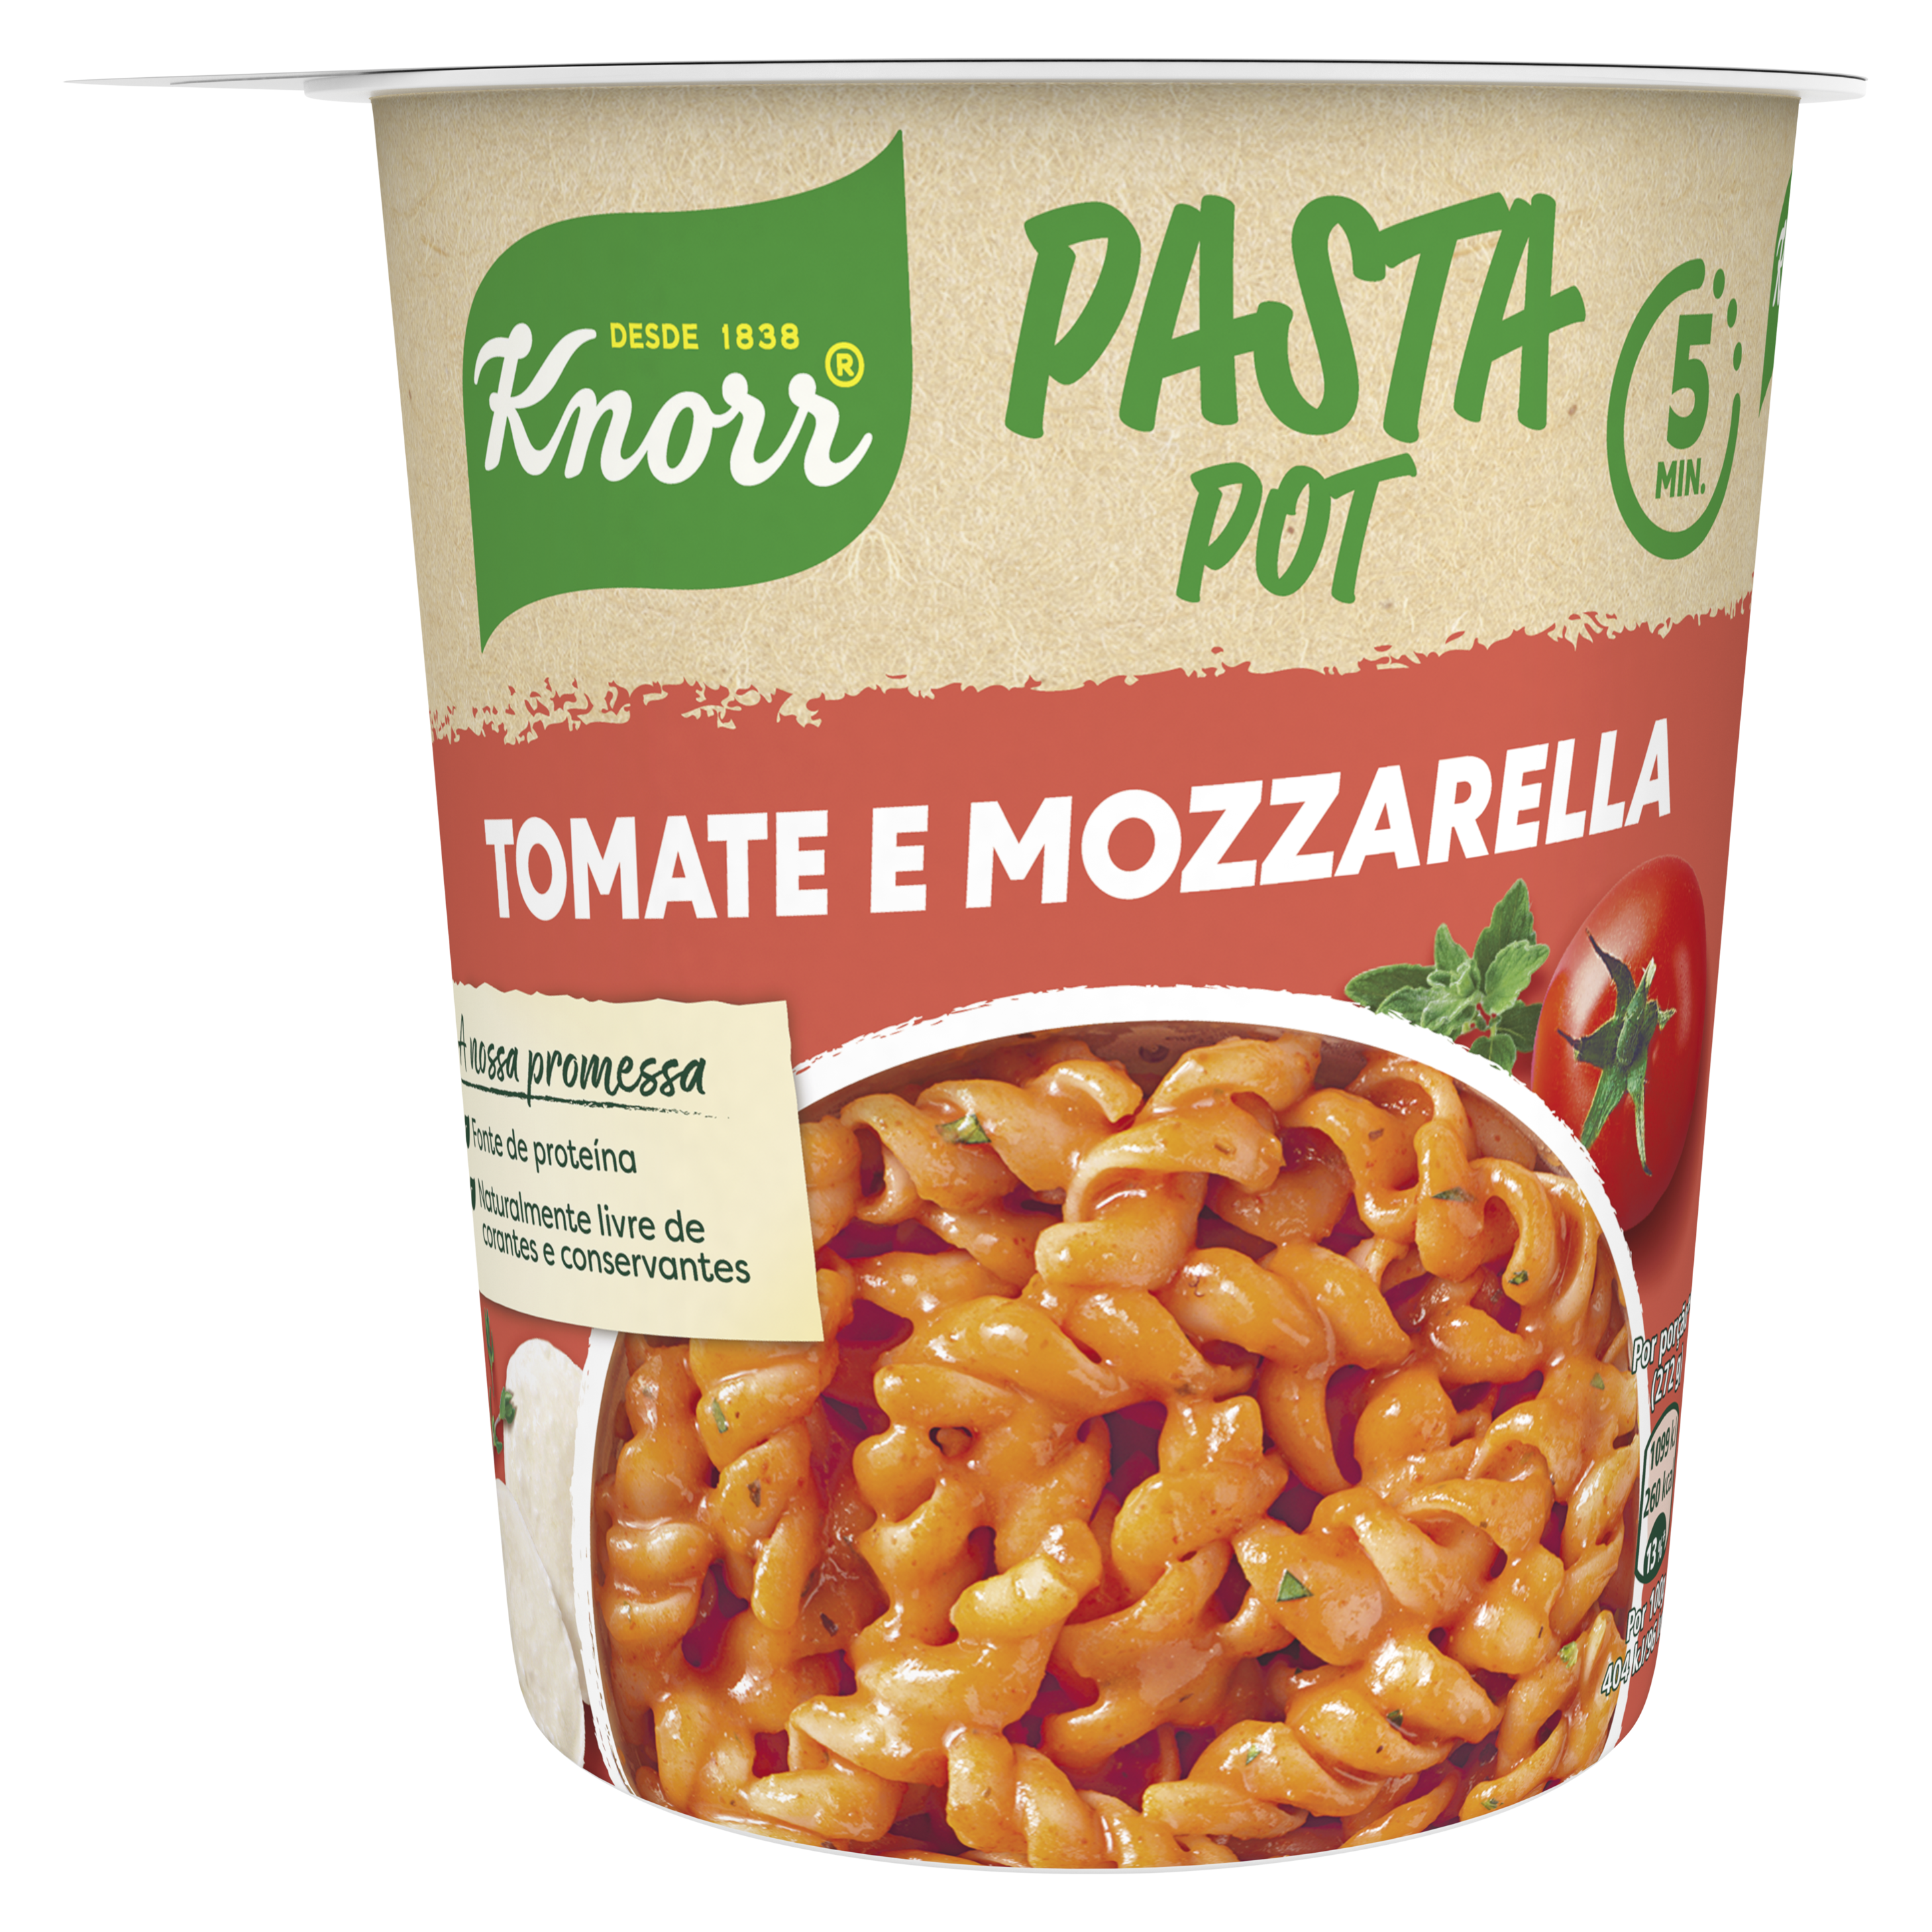 Pasta Pot Tomate e Mozzarella